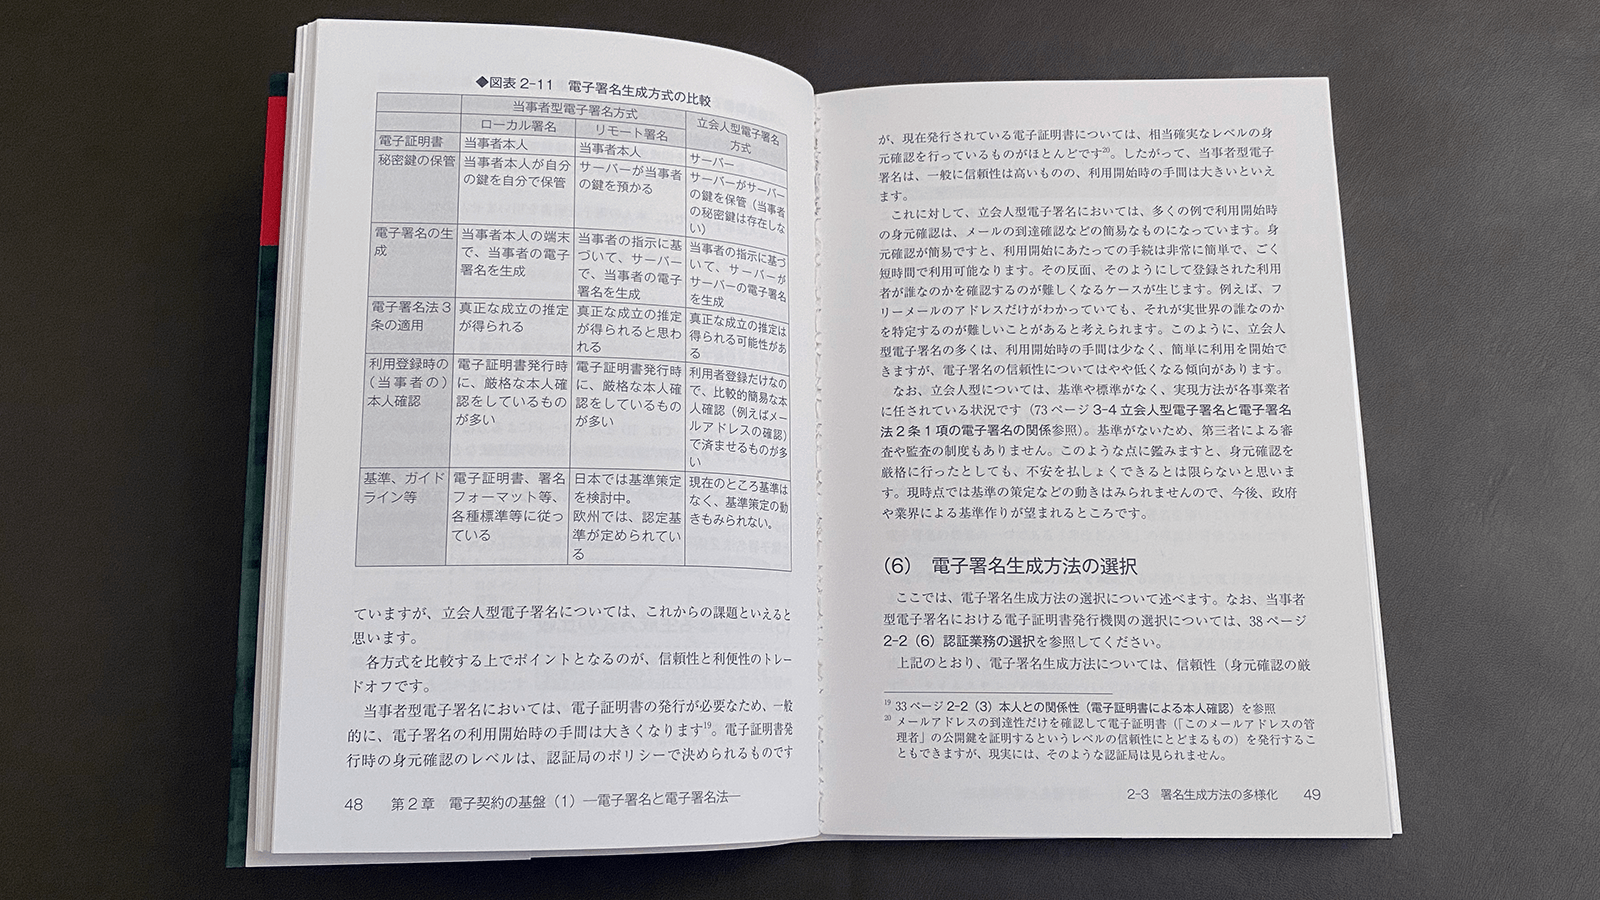 宮内宏『電子契約の教科書』P48-49